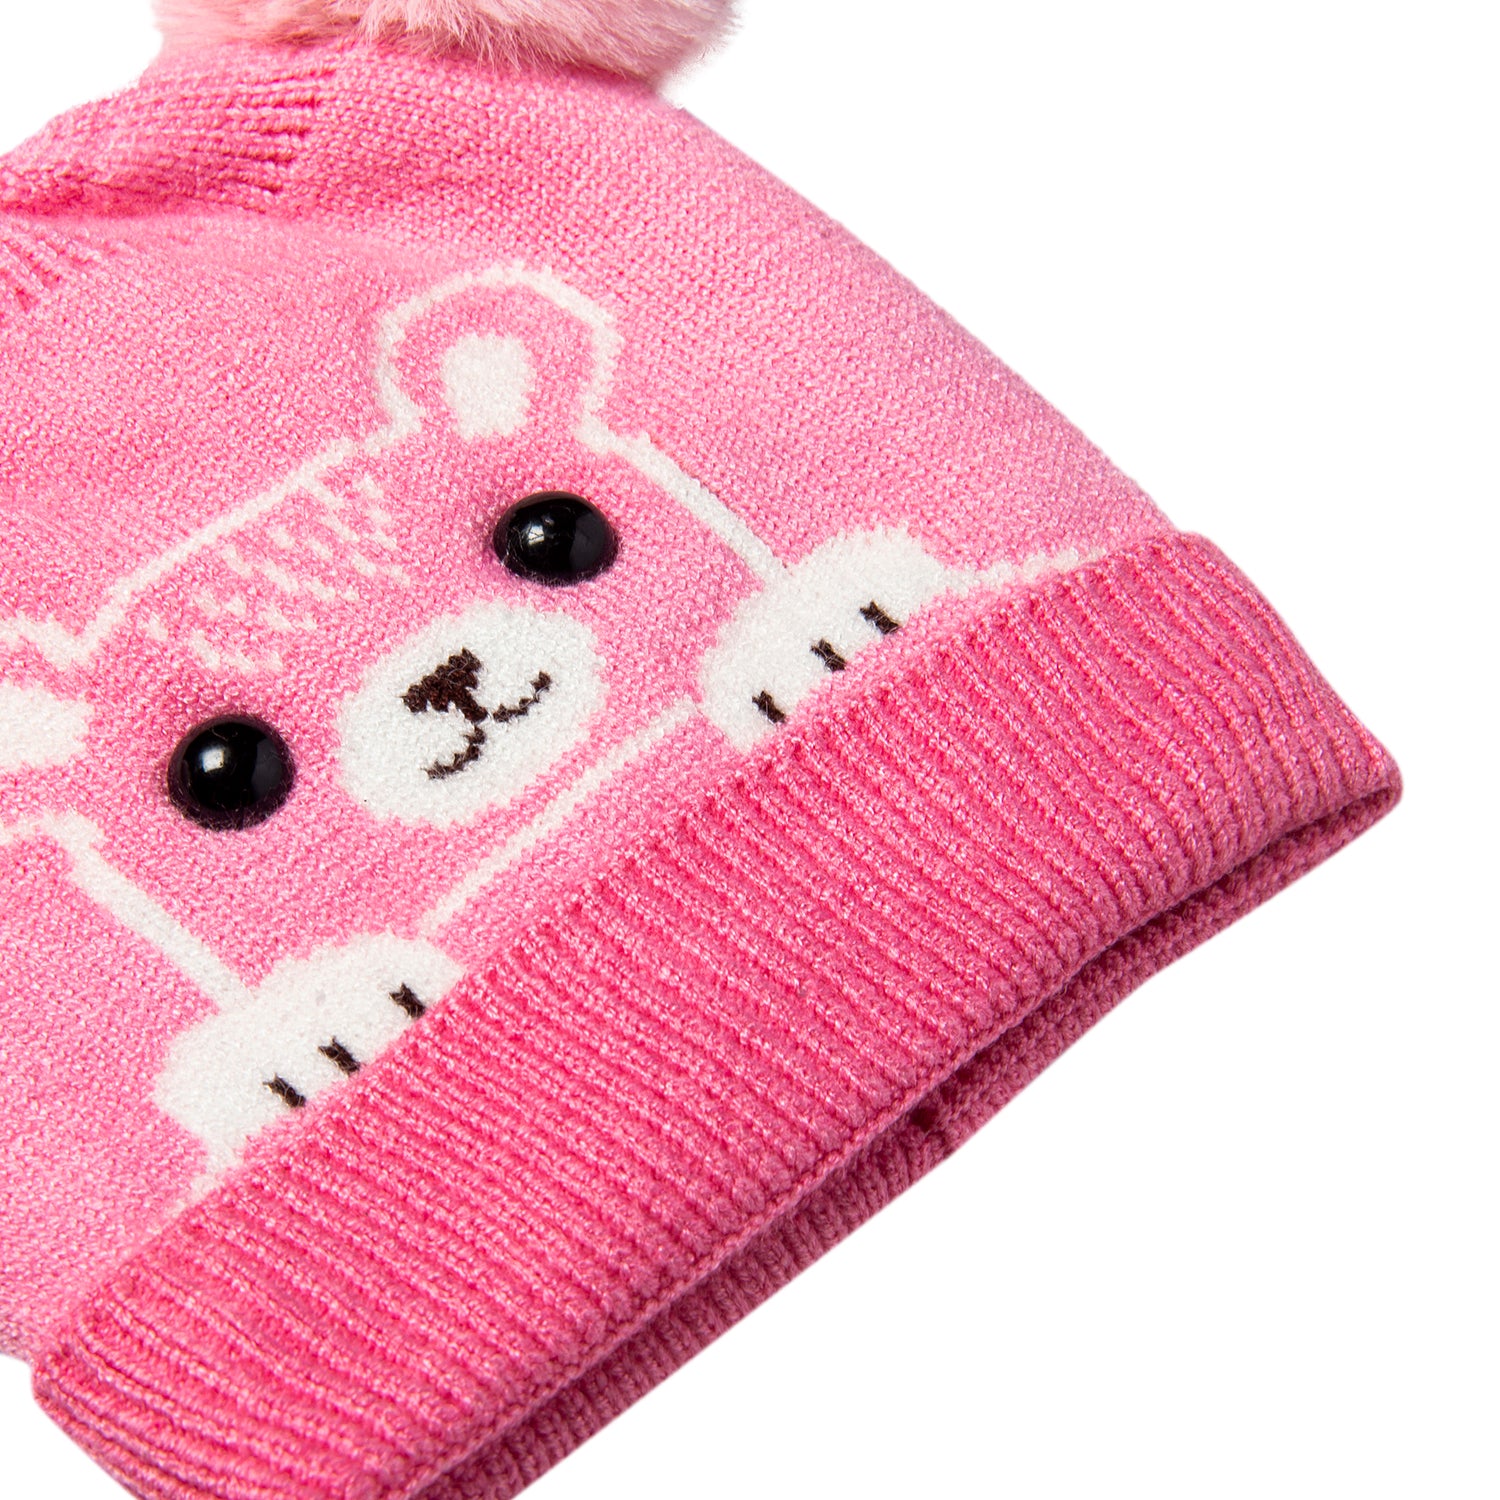 Knit Woollen Cap Pom Pom Bear Pink - Baby Moo